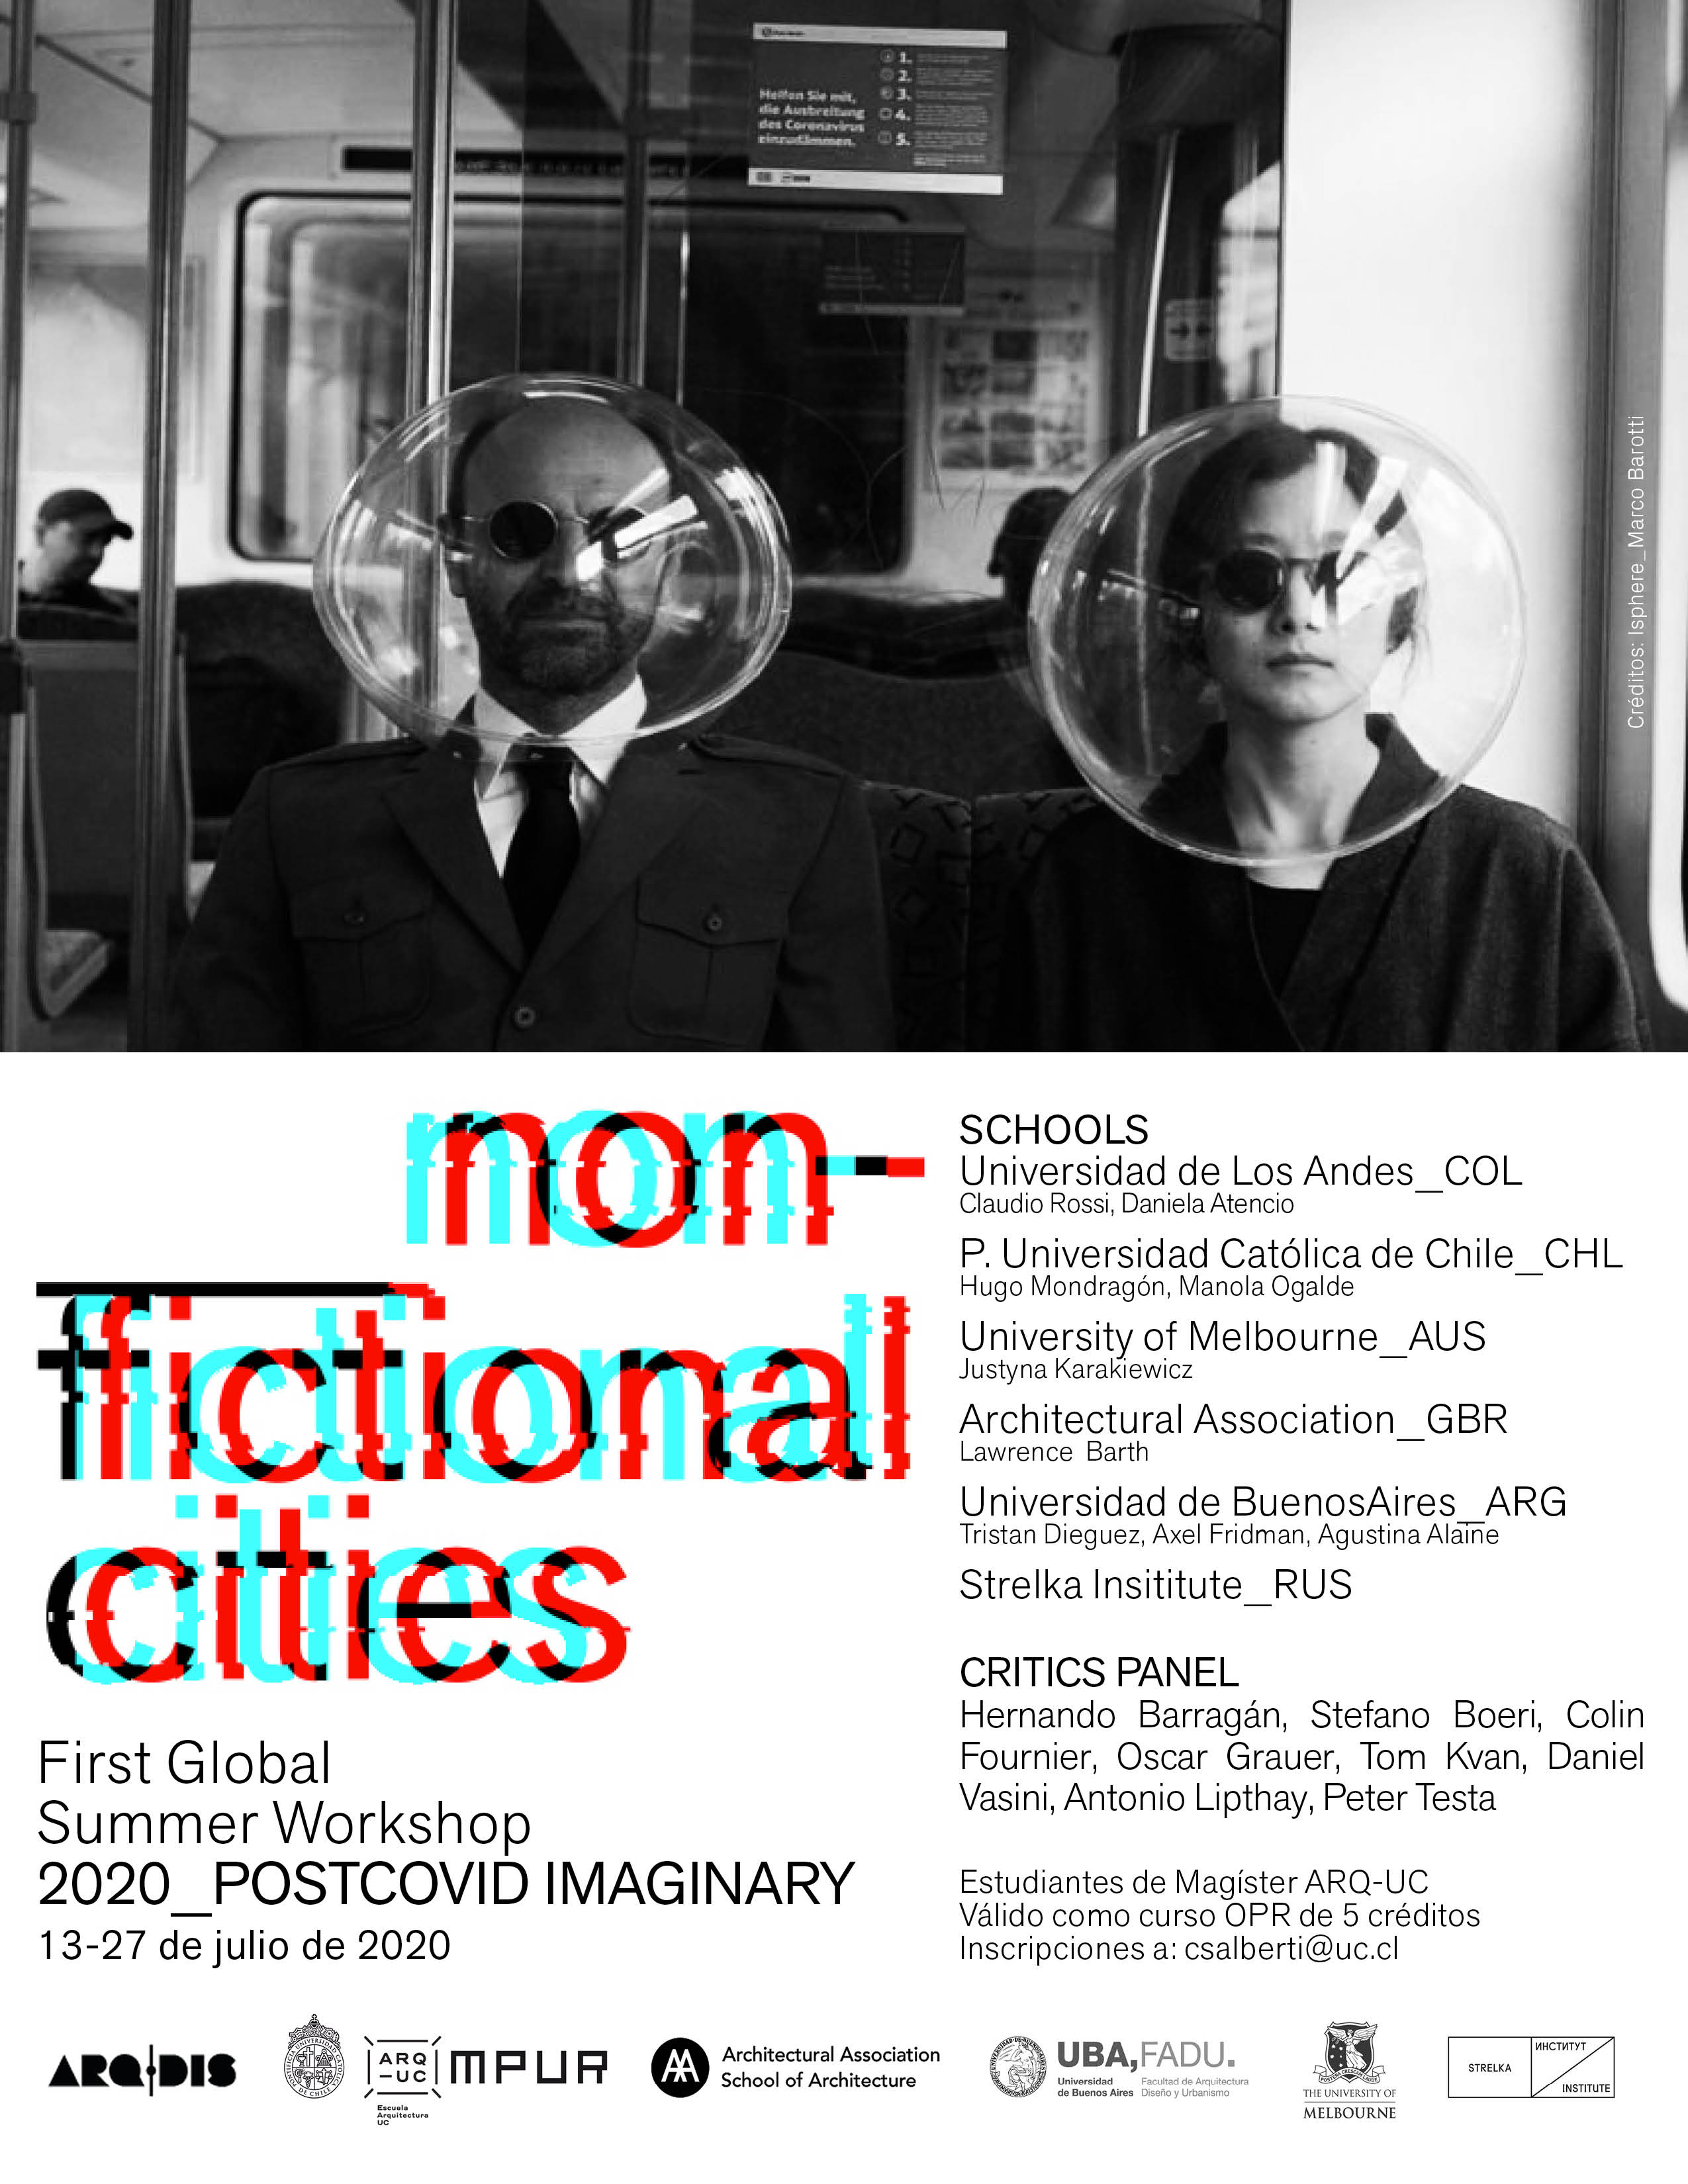 Afiche_Difusión_Interna_Non_Fictional_Cities_ARQ-UC_1.jpg